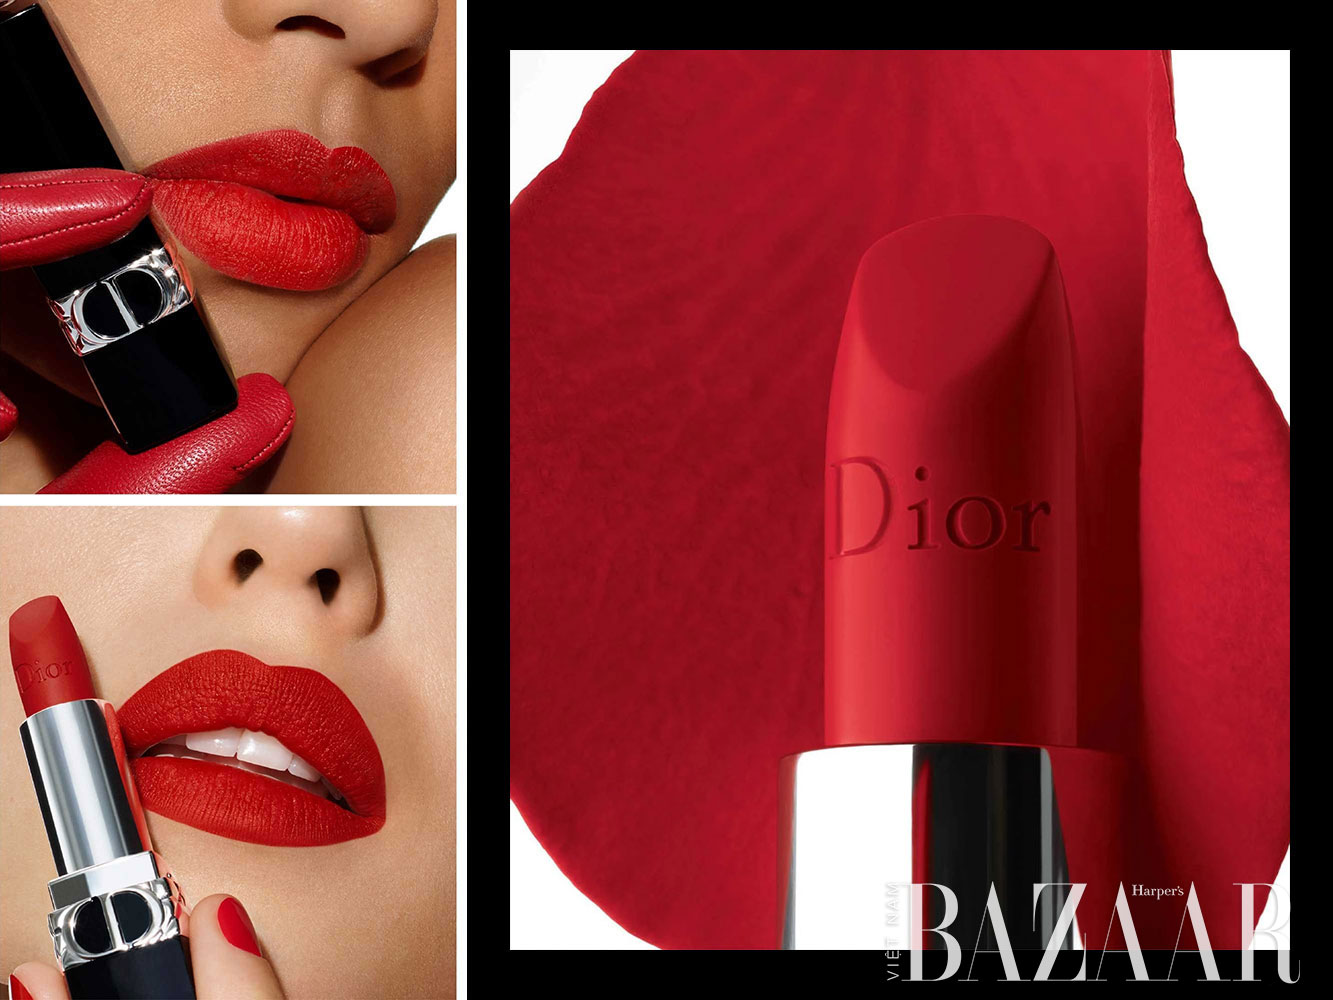 Review Son Dior Addict 667 Diormania Màu Hồng Khô Sành Điệu